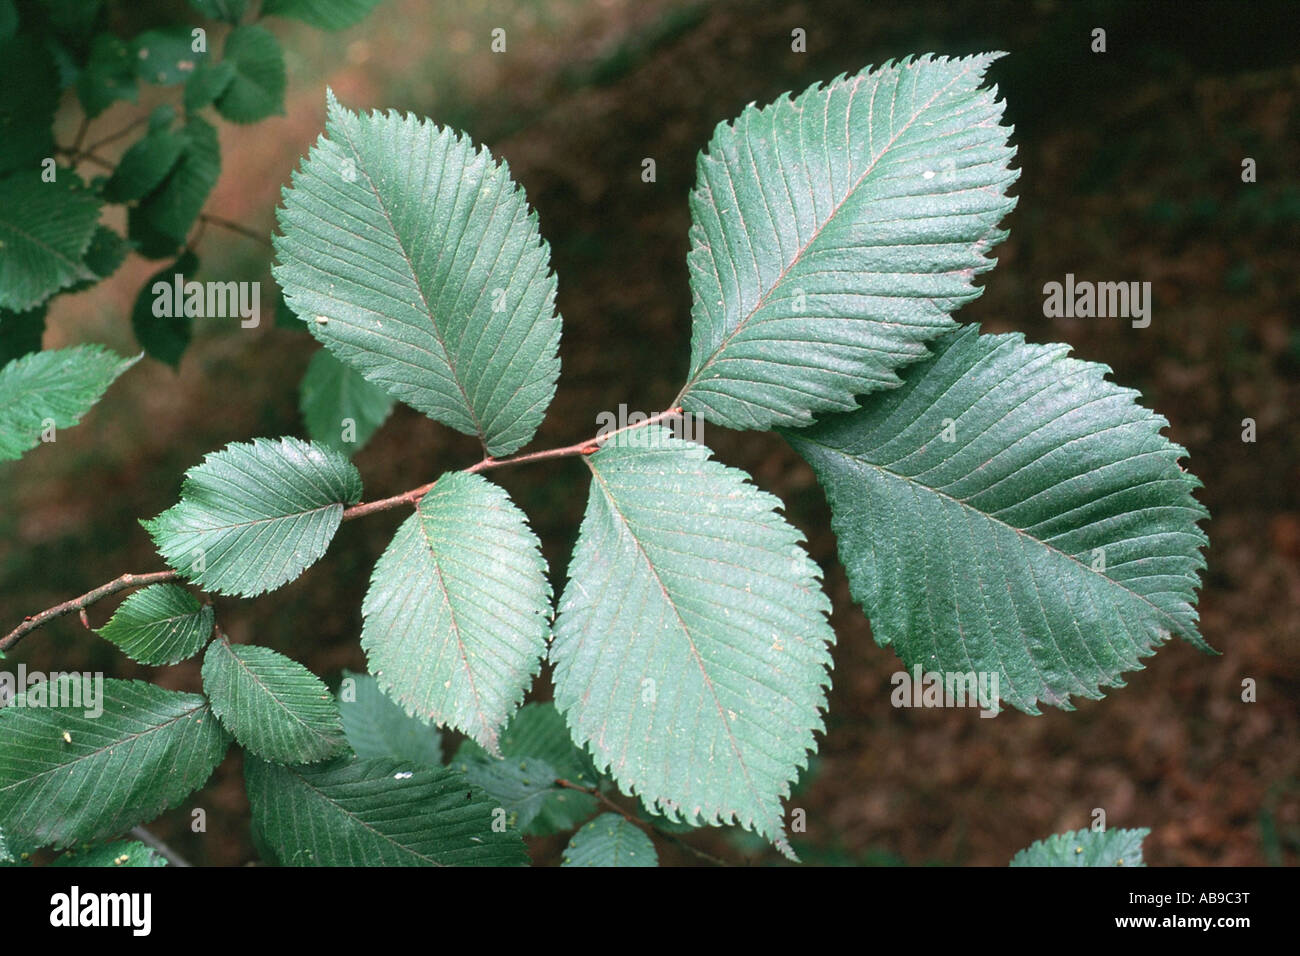 European elm, European white elm (Ulmus laevis), twig, Germany Stock Photo